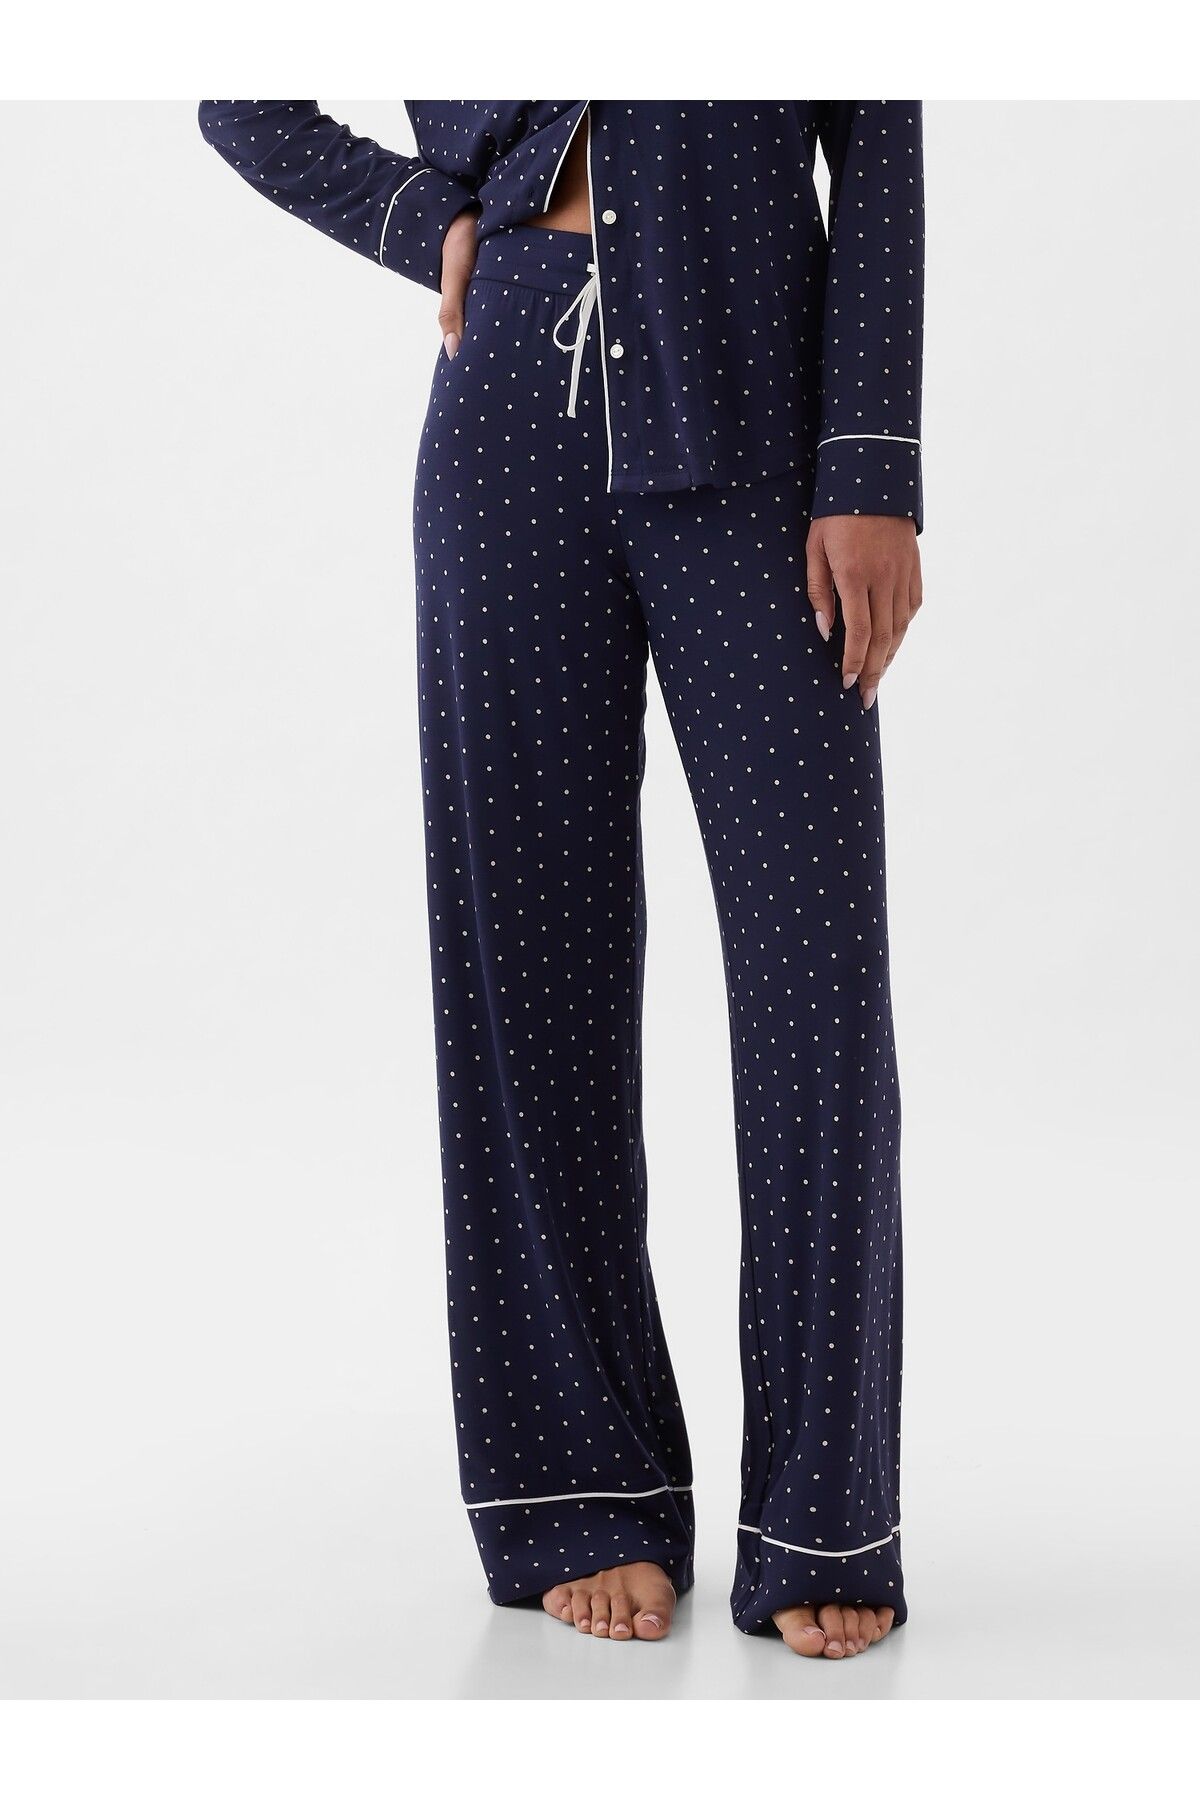 GAP Kadın Lacivert Modal Karışımlı Pijama Altı